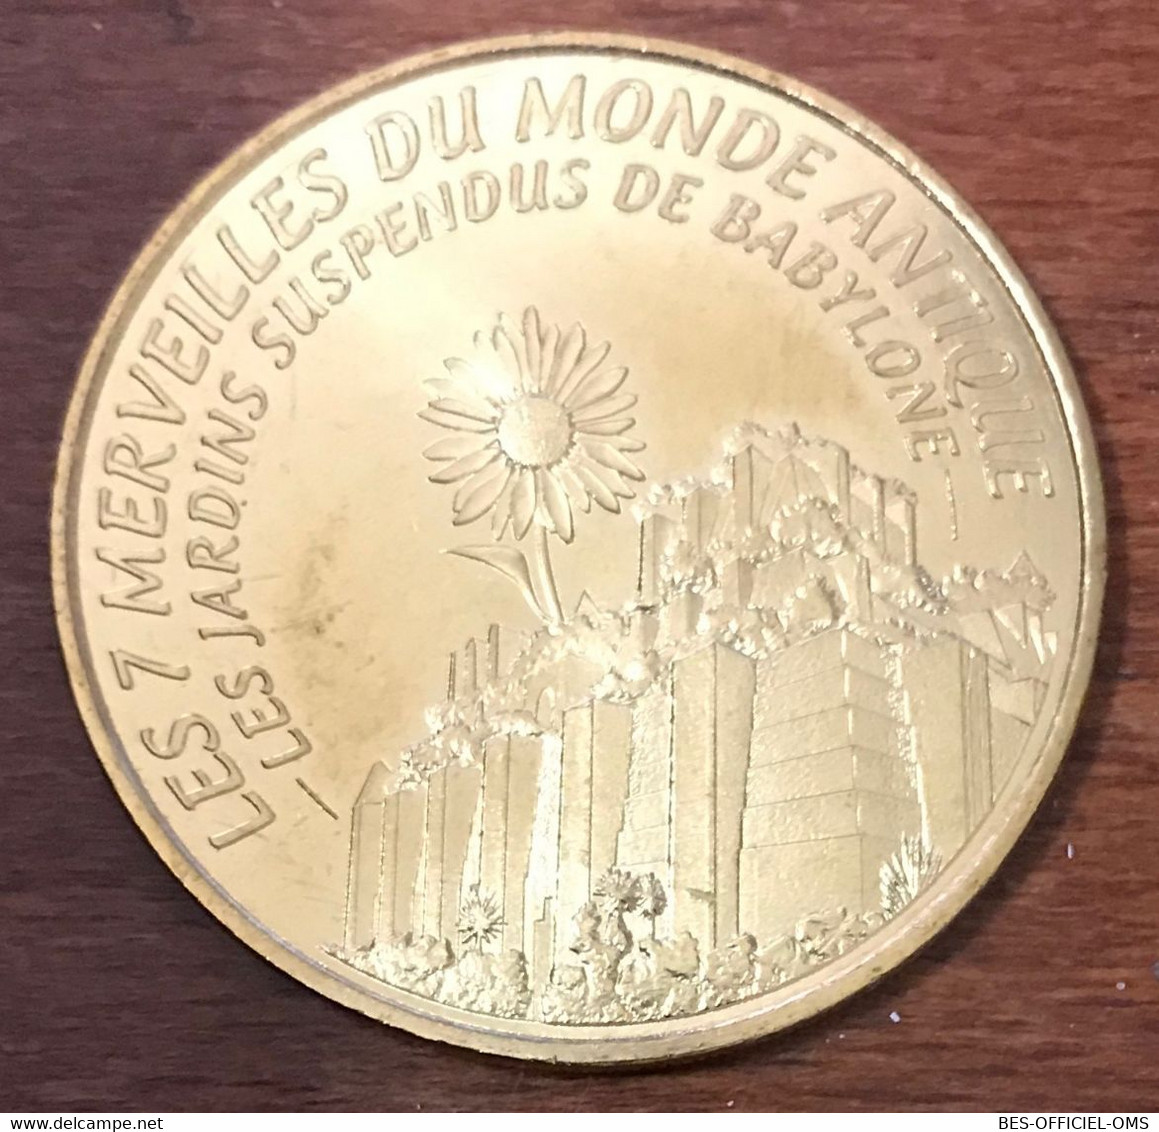 13 AUBAGNE LES JARDINS SUSPENDUS DE BABYLONE MDP 2015 MEDAILLE MONNAIE DE PARIS JETON TOURISTIQUE MEDALS COINS TOKENS - 2015